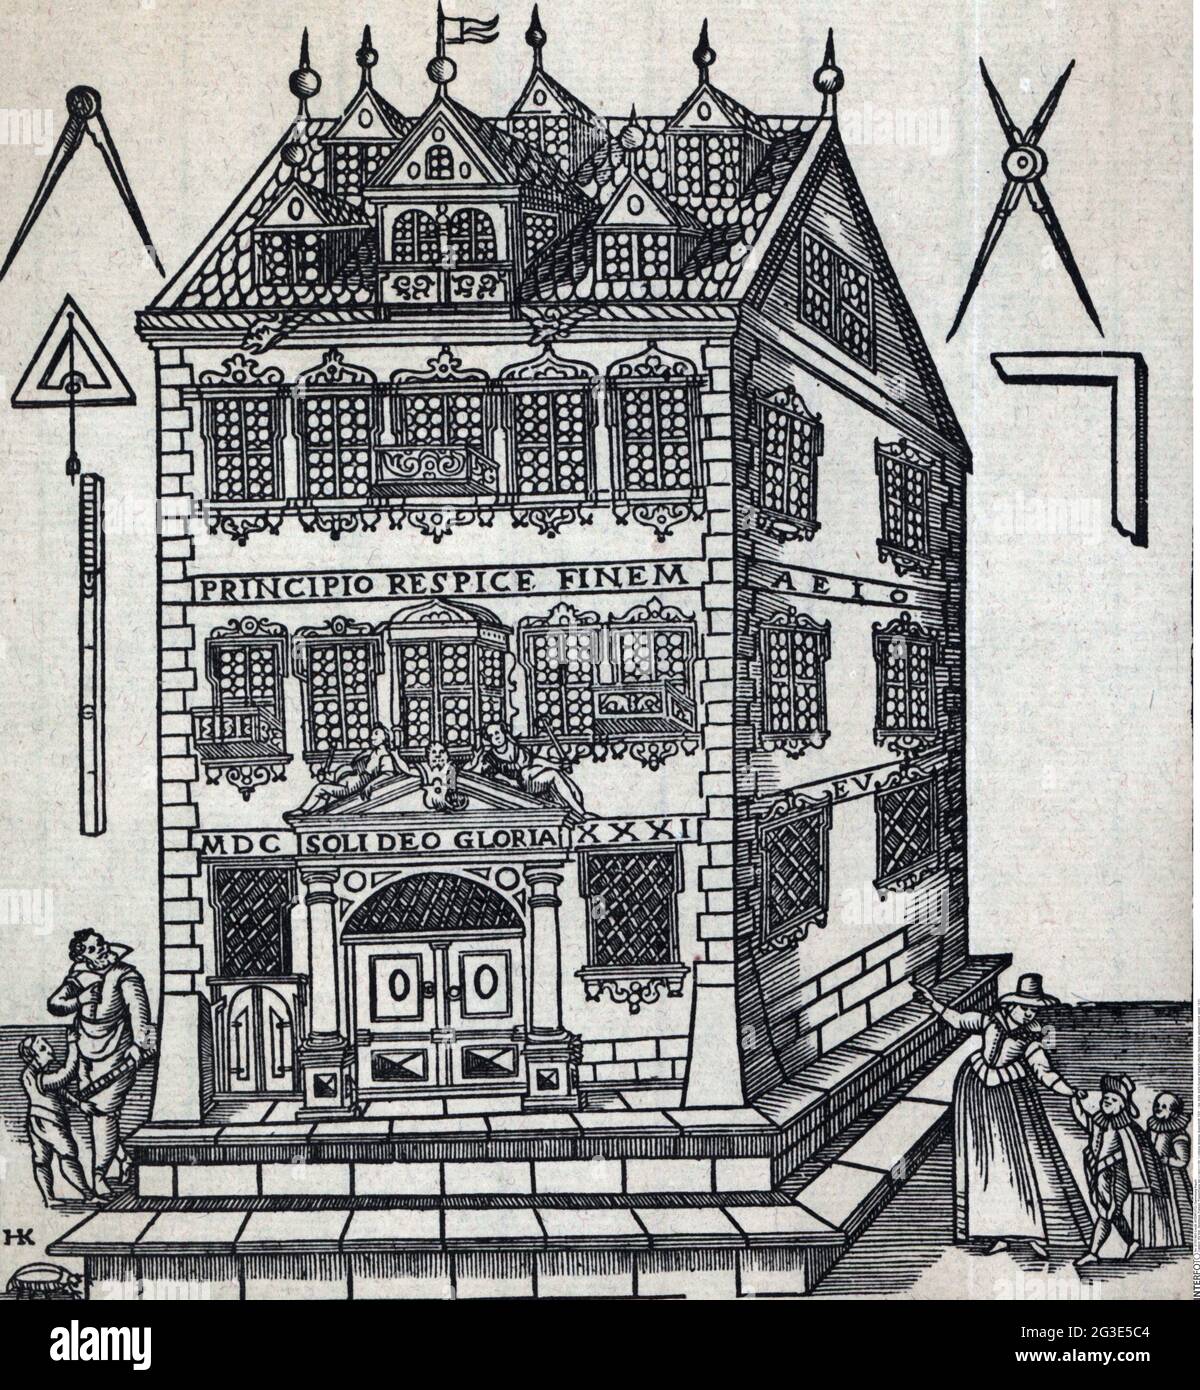 Juguete, muñecas, casa de muñecas de Anna Koeferlin, Nuremberg, anuncio, detalle, 1631, LOS COPYRIGHT DEL ARTISTA NO SE HAN DE BORRAR Foto de stock